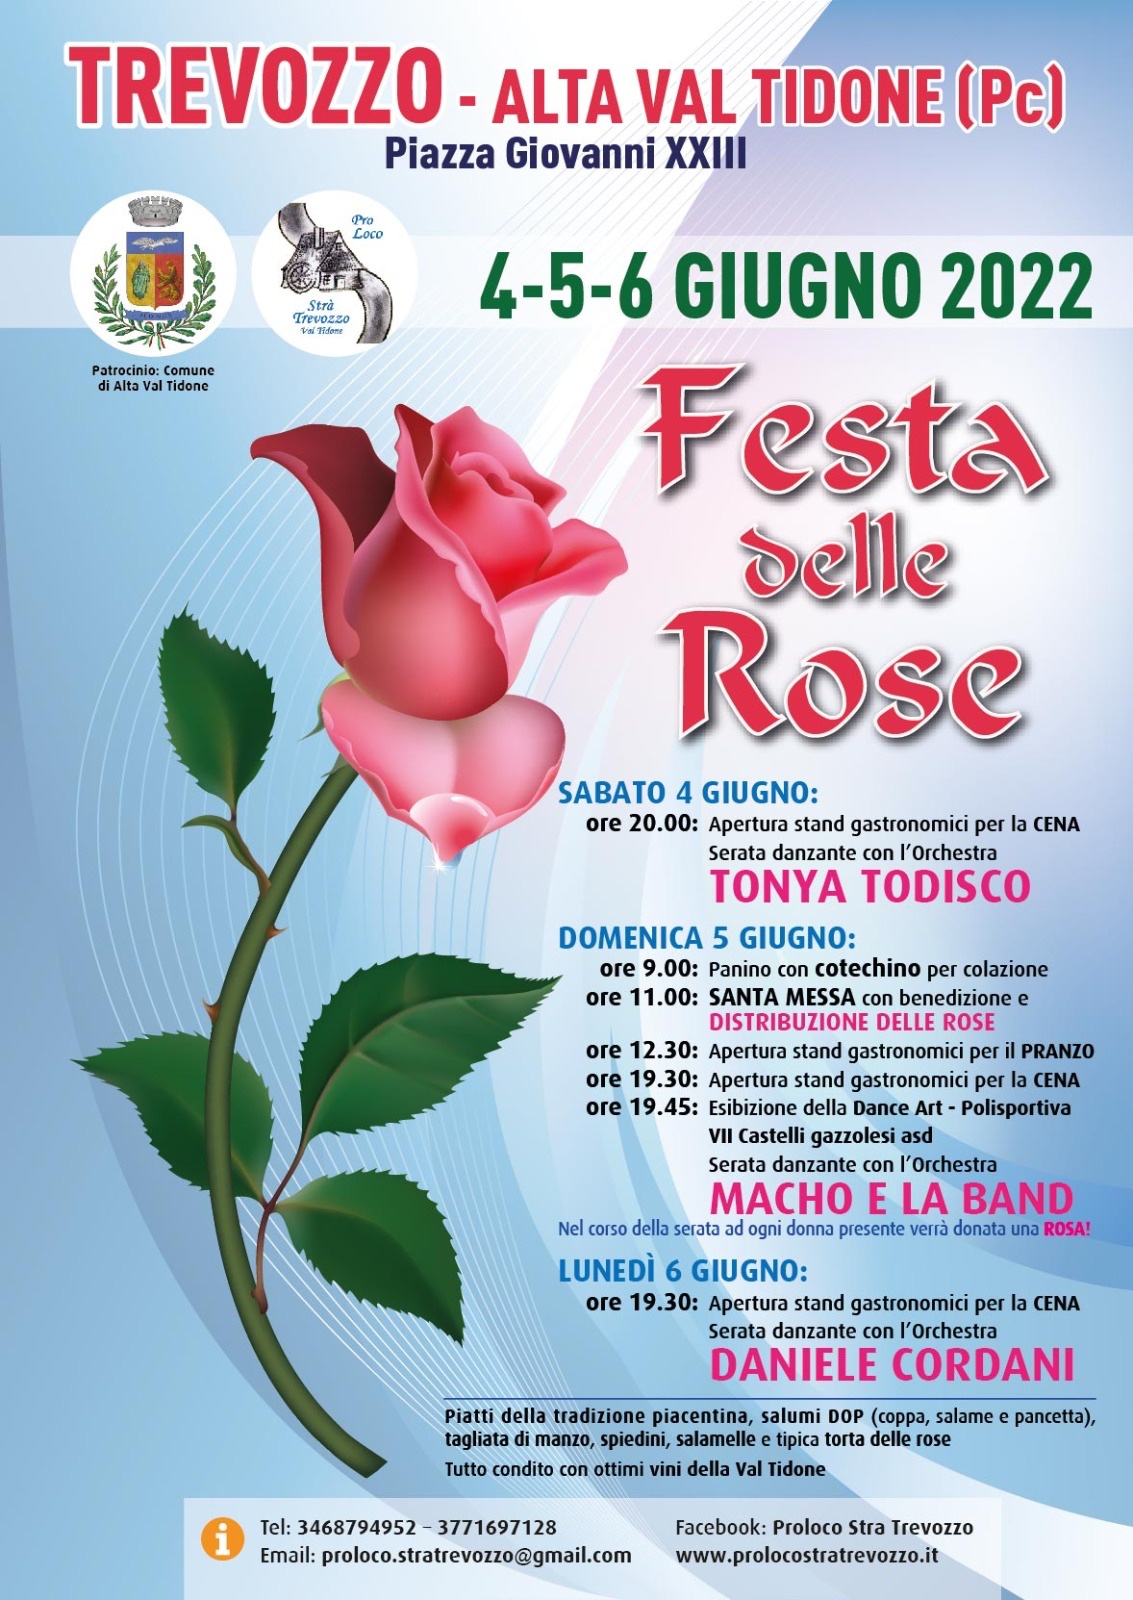 Programma della Festa delle Rose 2022 di Trevozzo